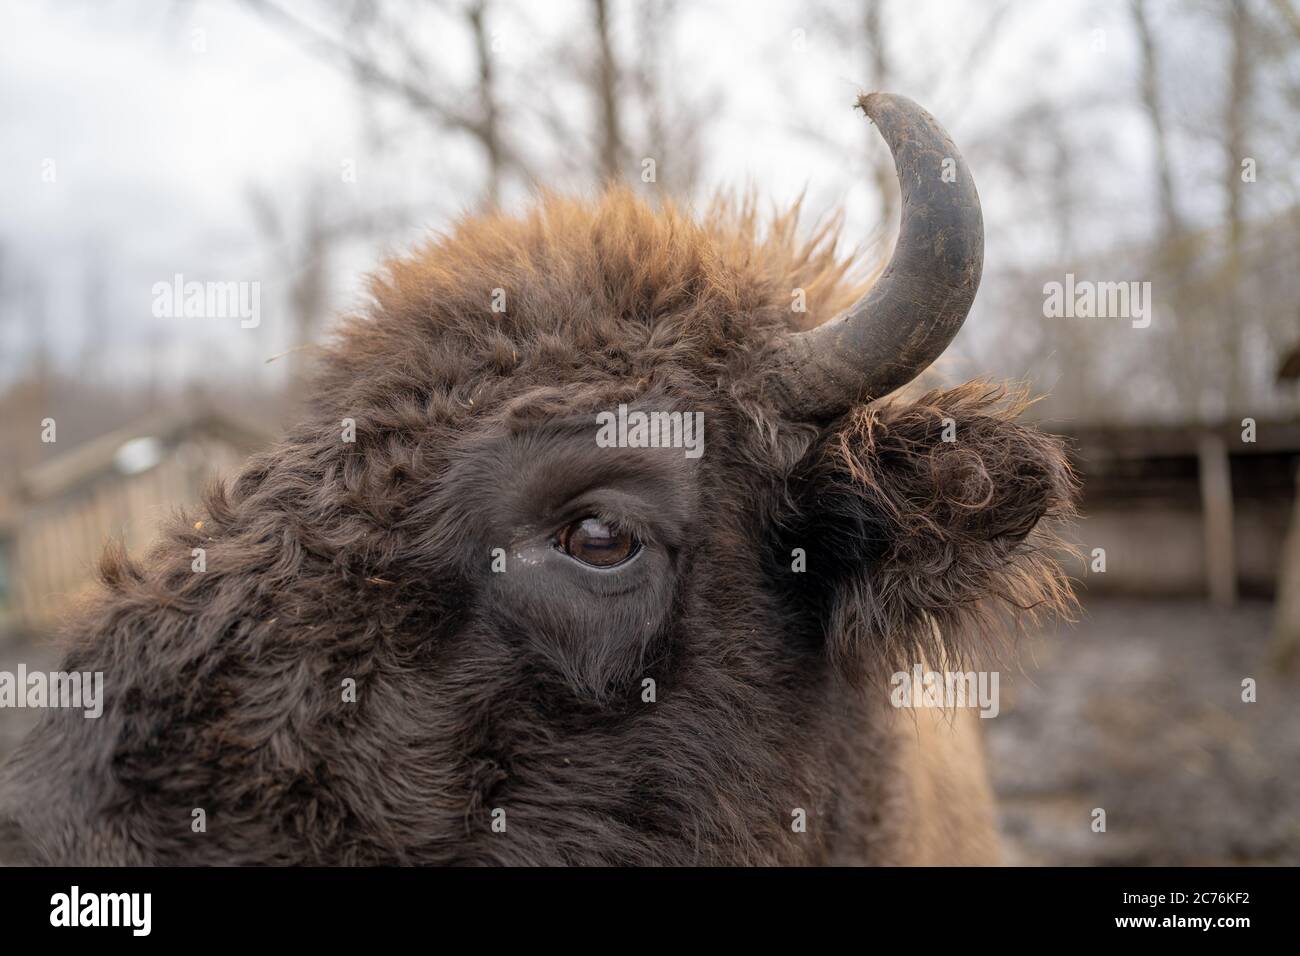 Gros plan du grand bison brun dans l'enceinte. Buffle à cornes dans le parc de la réserve. Banque D'Images